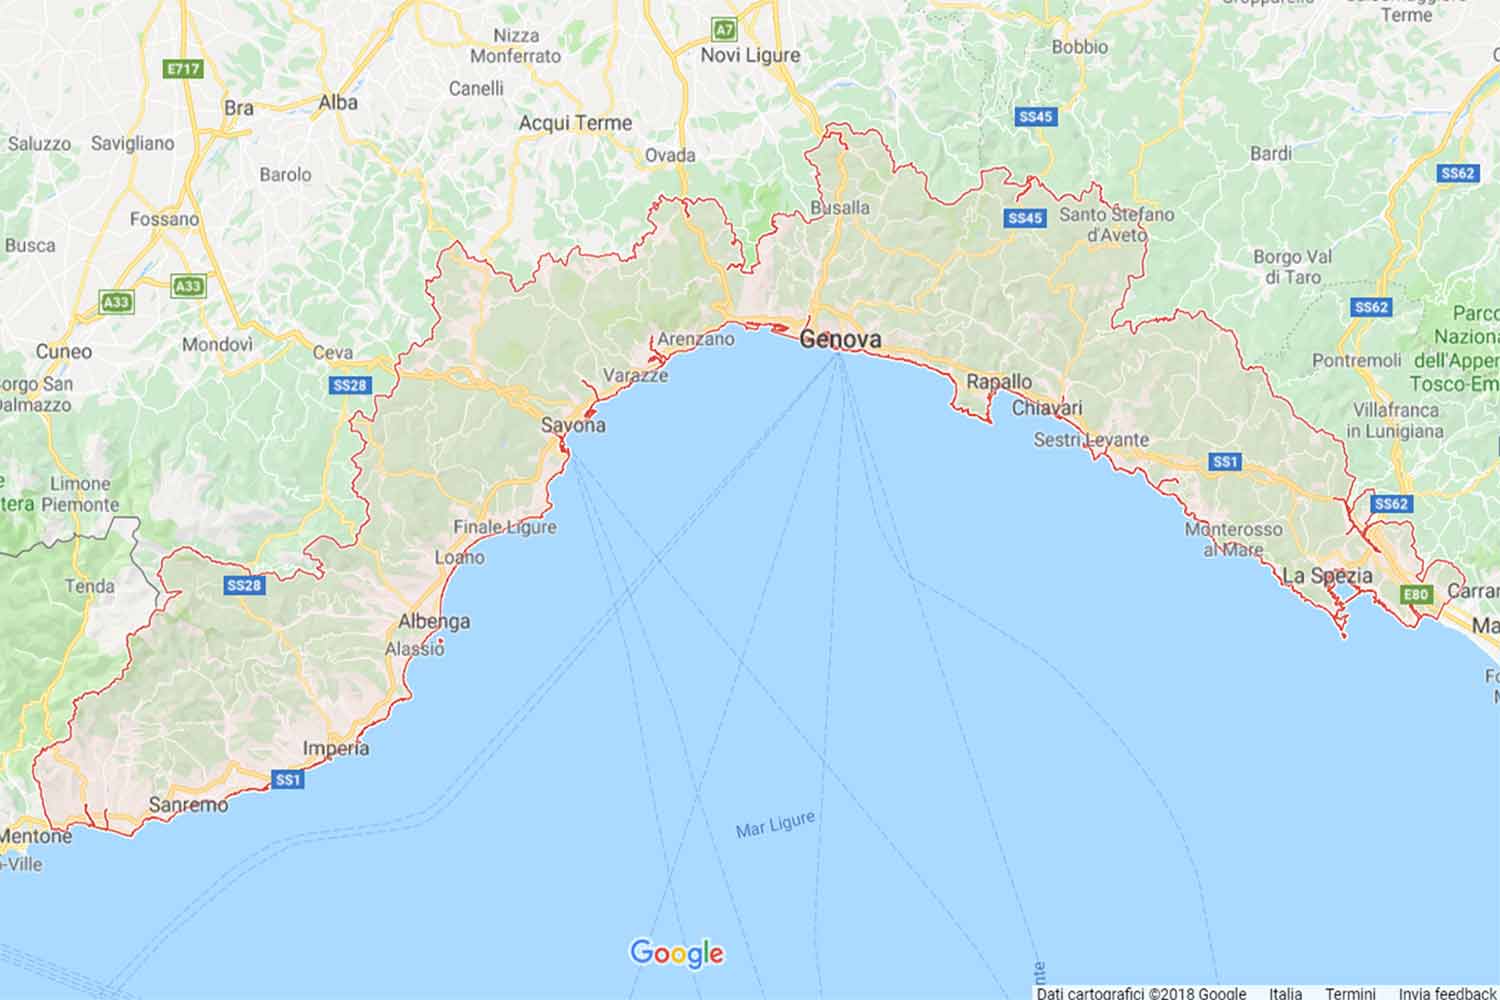 Liguria - Savona - Noli Preventivi Veloci google maps